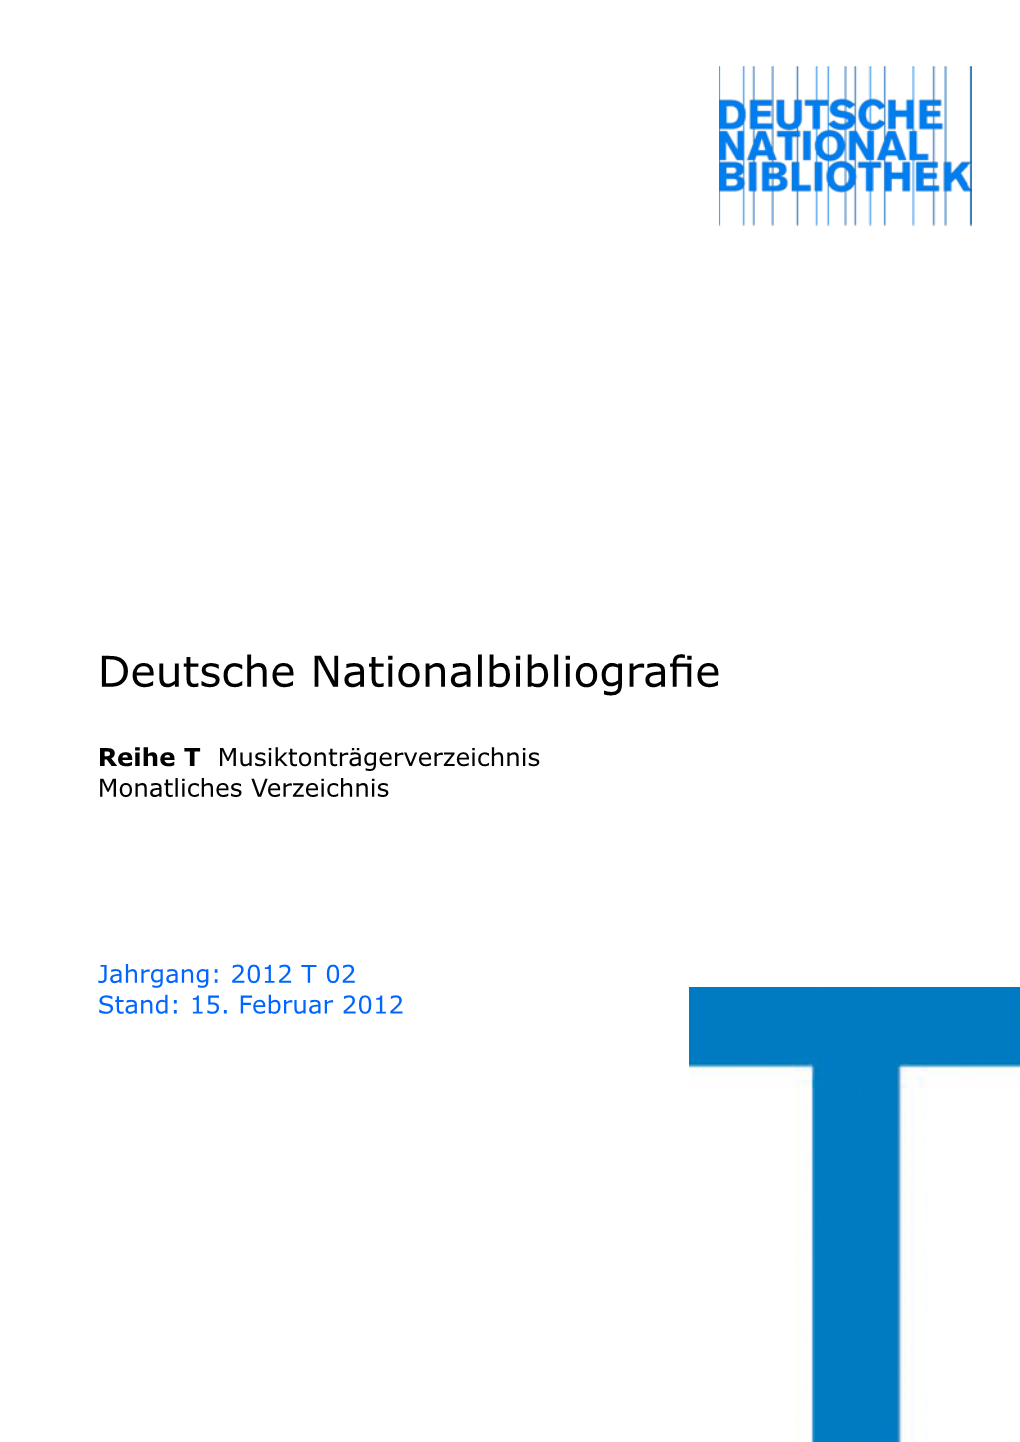 Deutsche Nationalbibliografie 2012 T 02